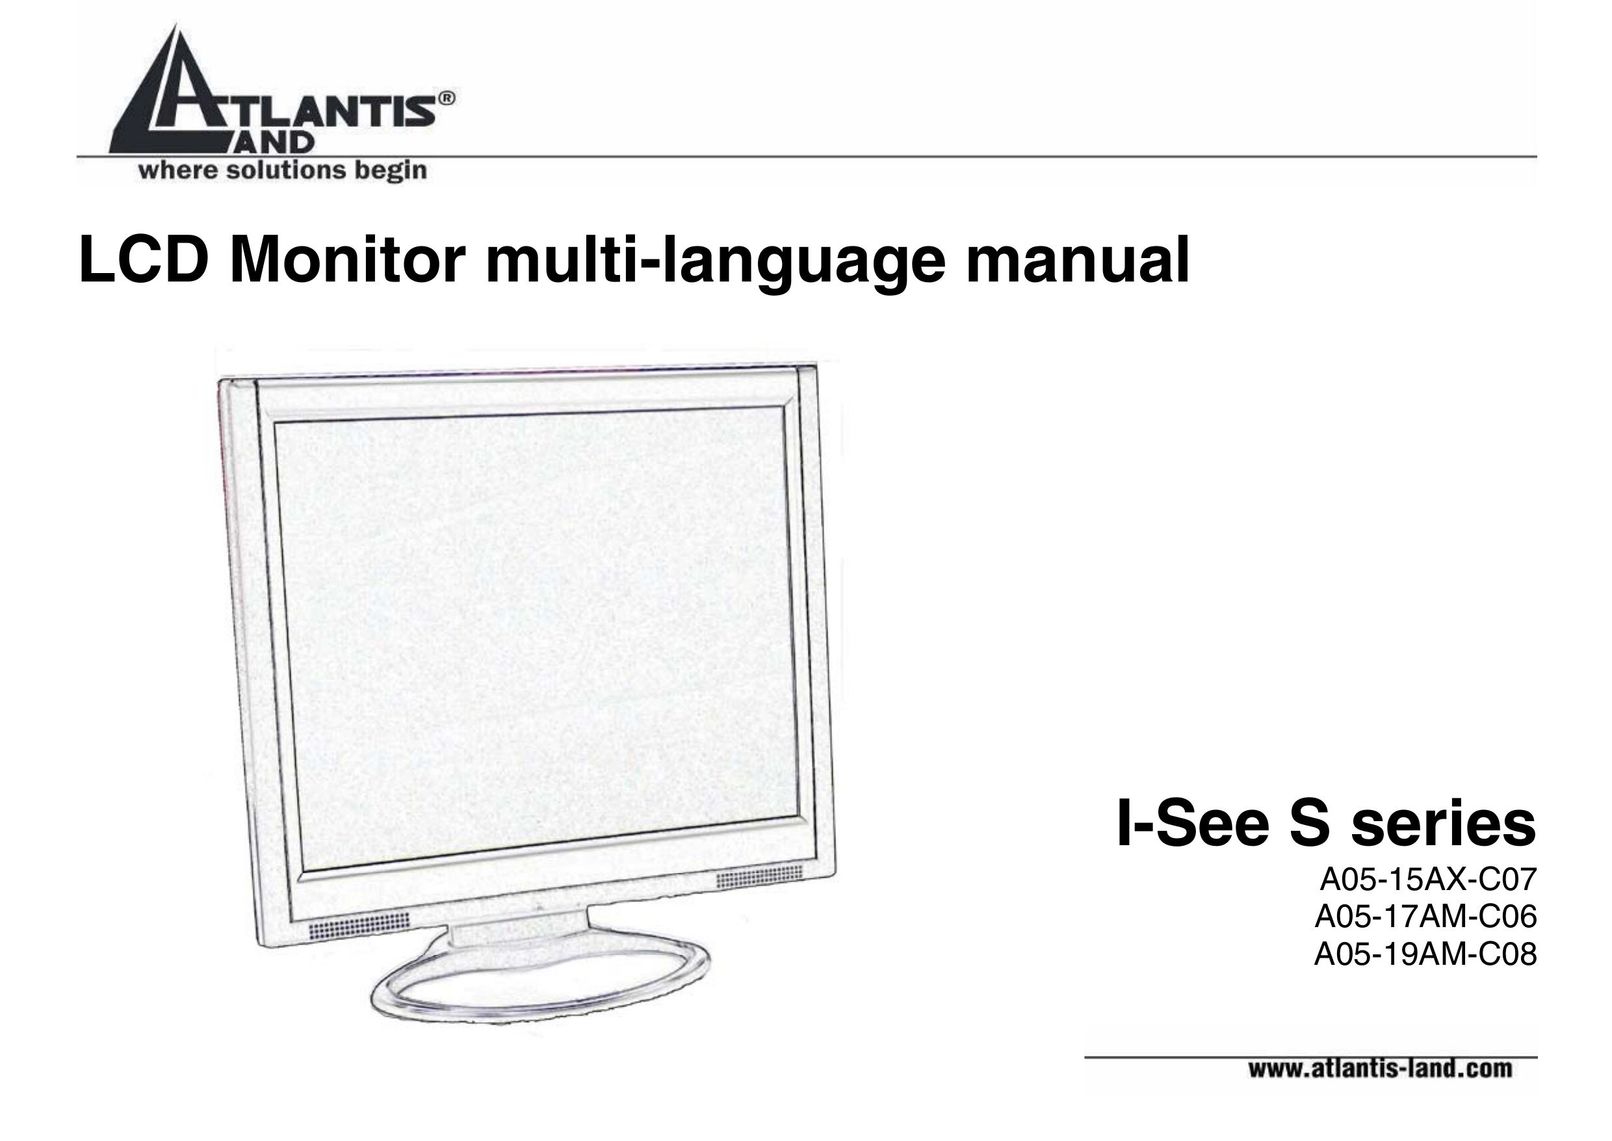 Atlantis Land A05-15AX-C07 Computer Monitor User Manual